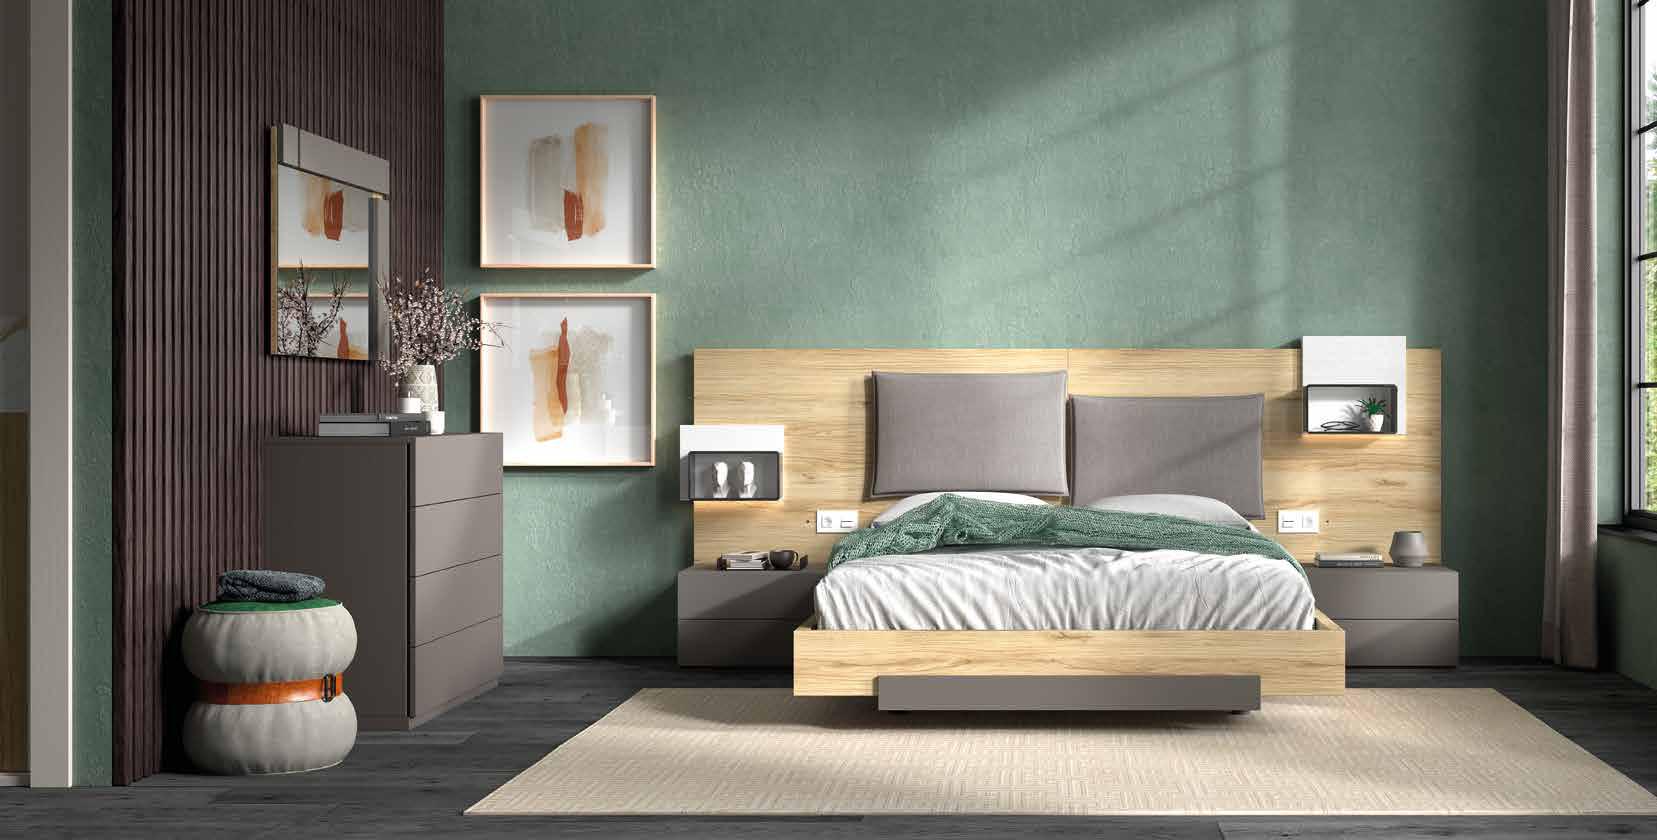 Cómo integrar el color marrón en el dormitorio (y que quede elegante)